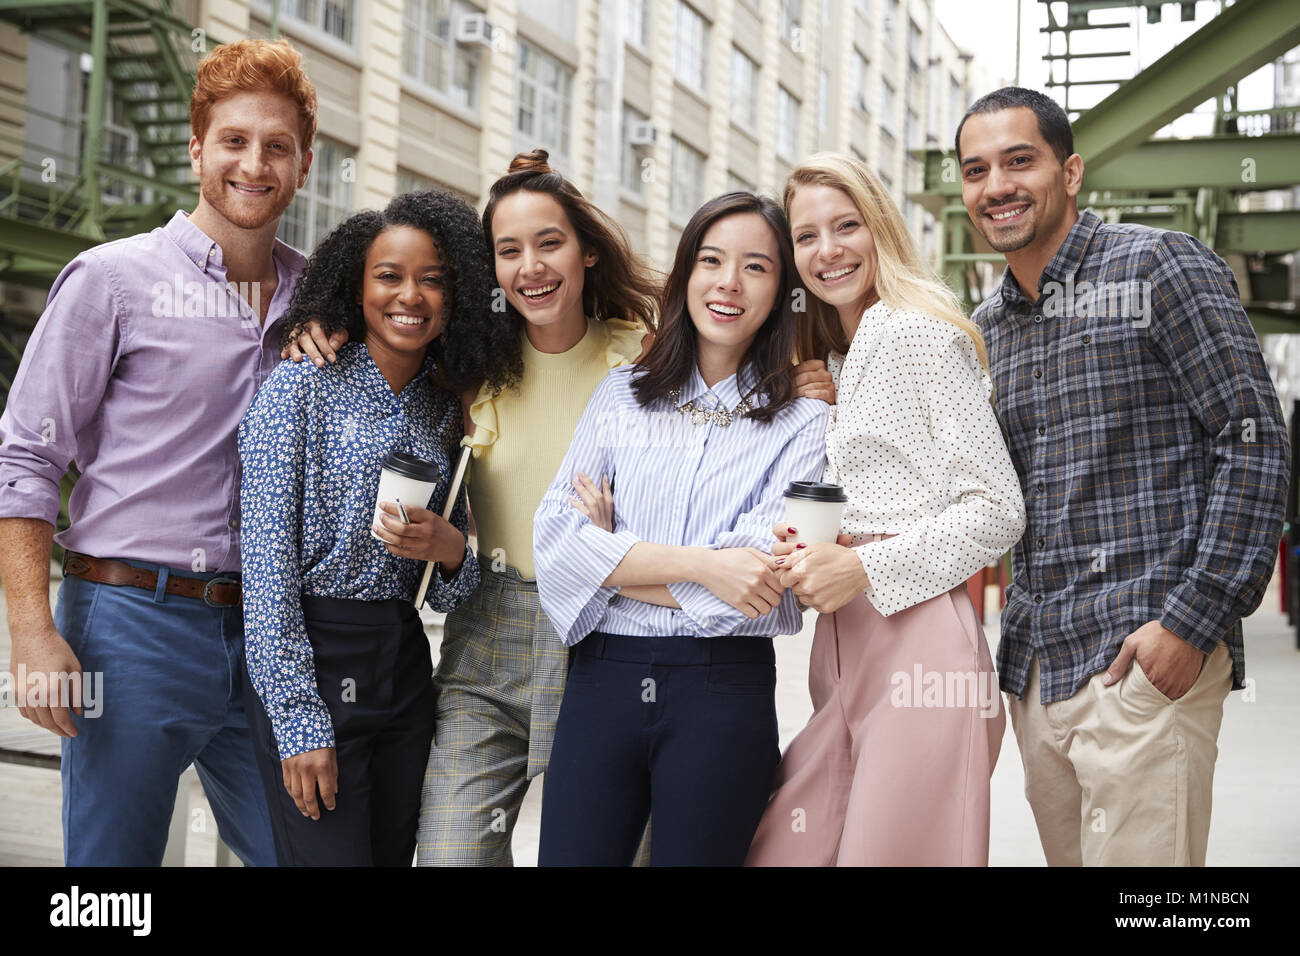 Sechs junge erwachsene Mitarbeiter stehen im Freien, Gruppe portrait Stockfoto